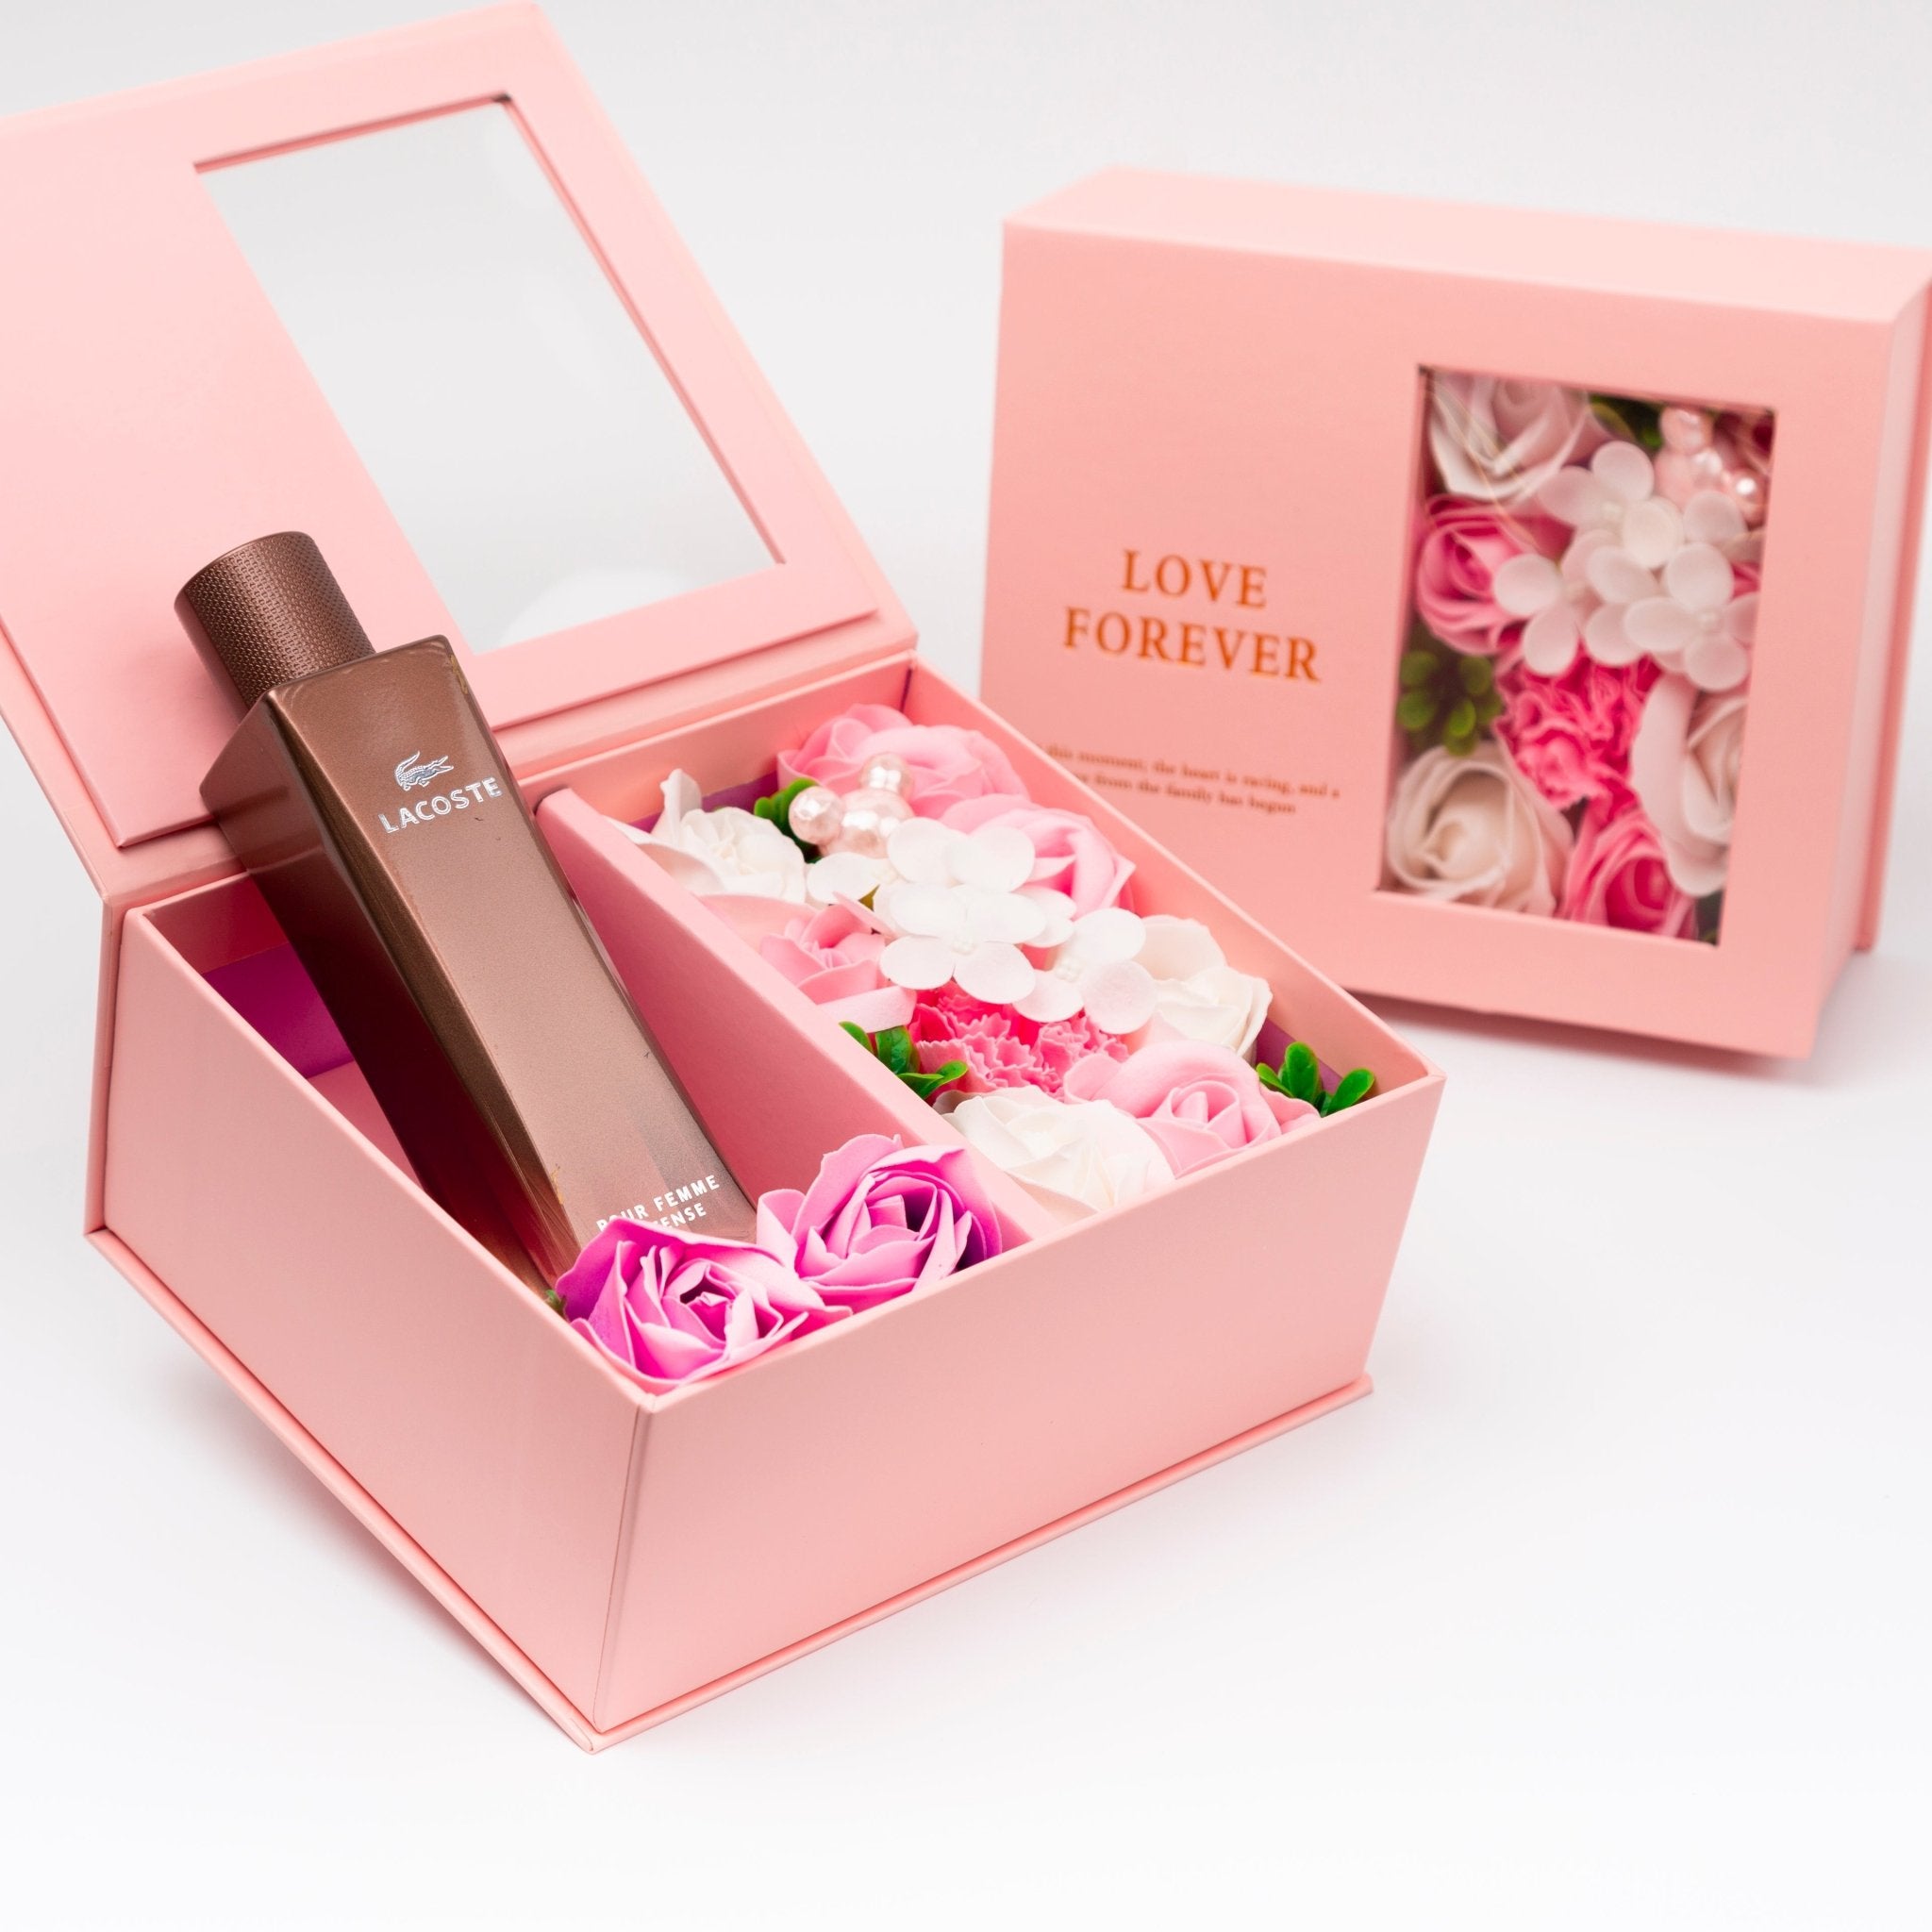 Flower Box - Perfume Gift For Women 18 - #shoFlower Box - Perfume Gift For Women 18p_name#Flower Box - Perfume Gift For Women 18Gift Boxes & TinsTakreemTakreem.joWomenPerfumeFlower Box - Perfume Gift For Women 18 - Takreem.jo